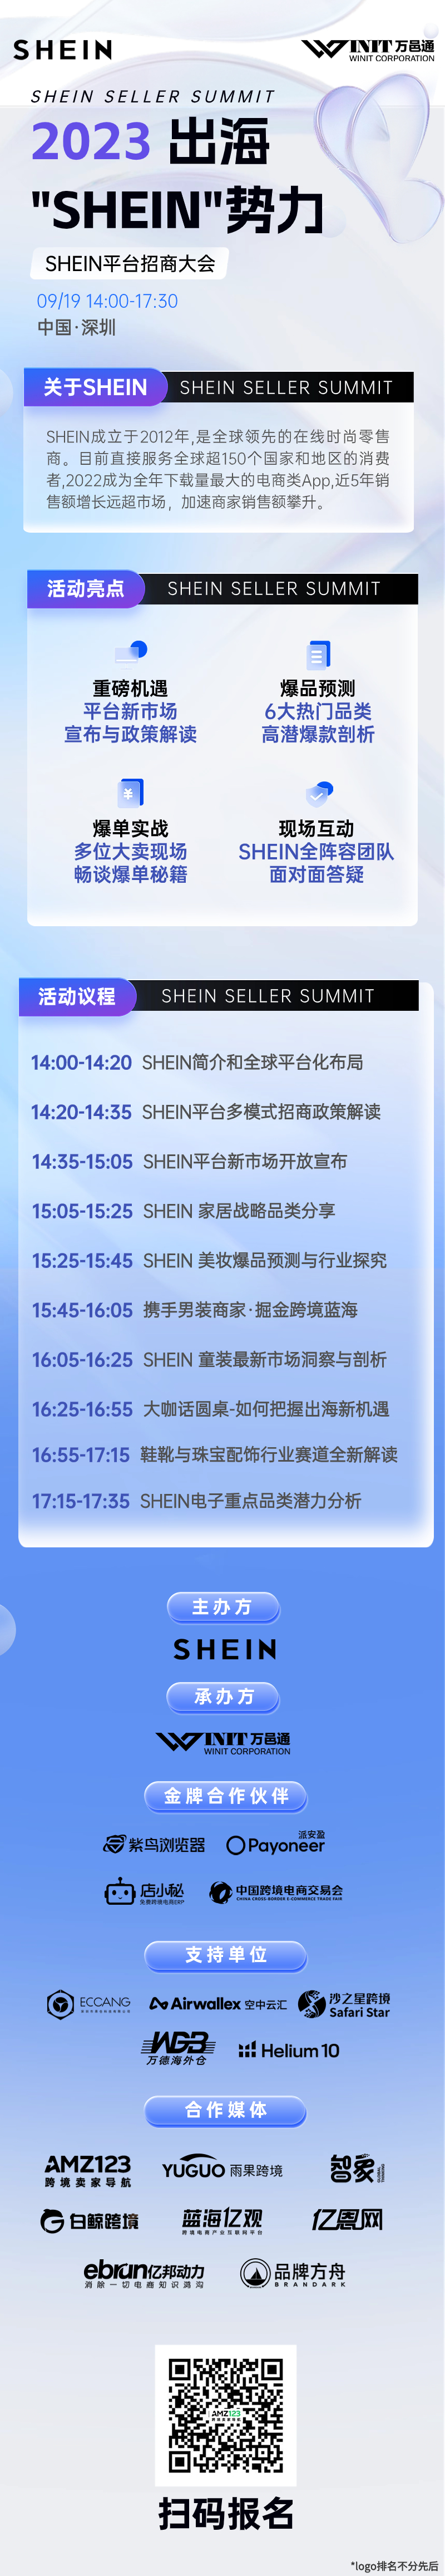 出海“SHEIN”势力——SHEIN平台招商大会